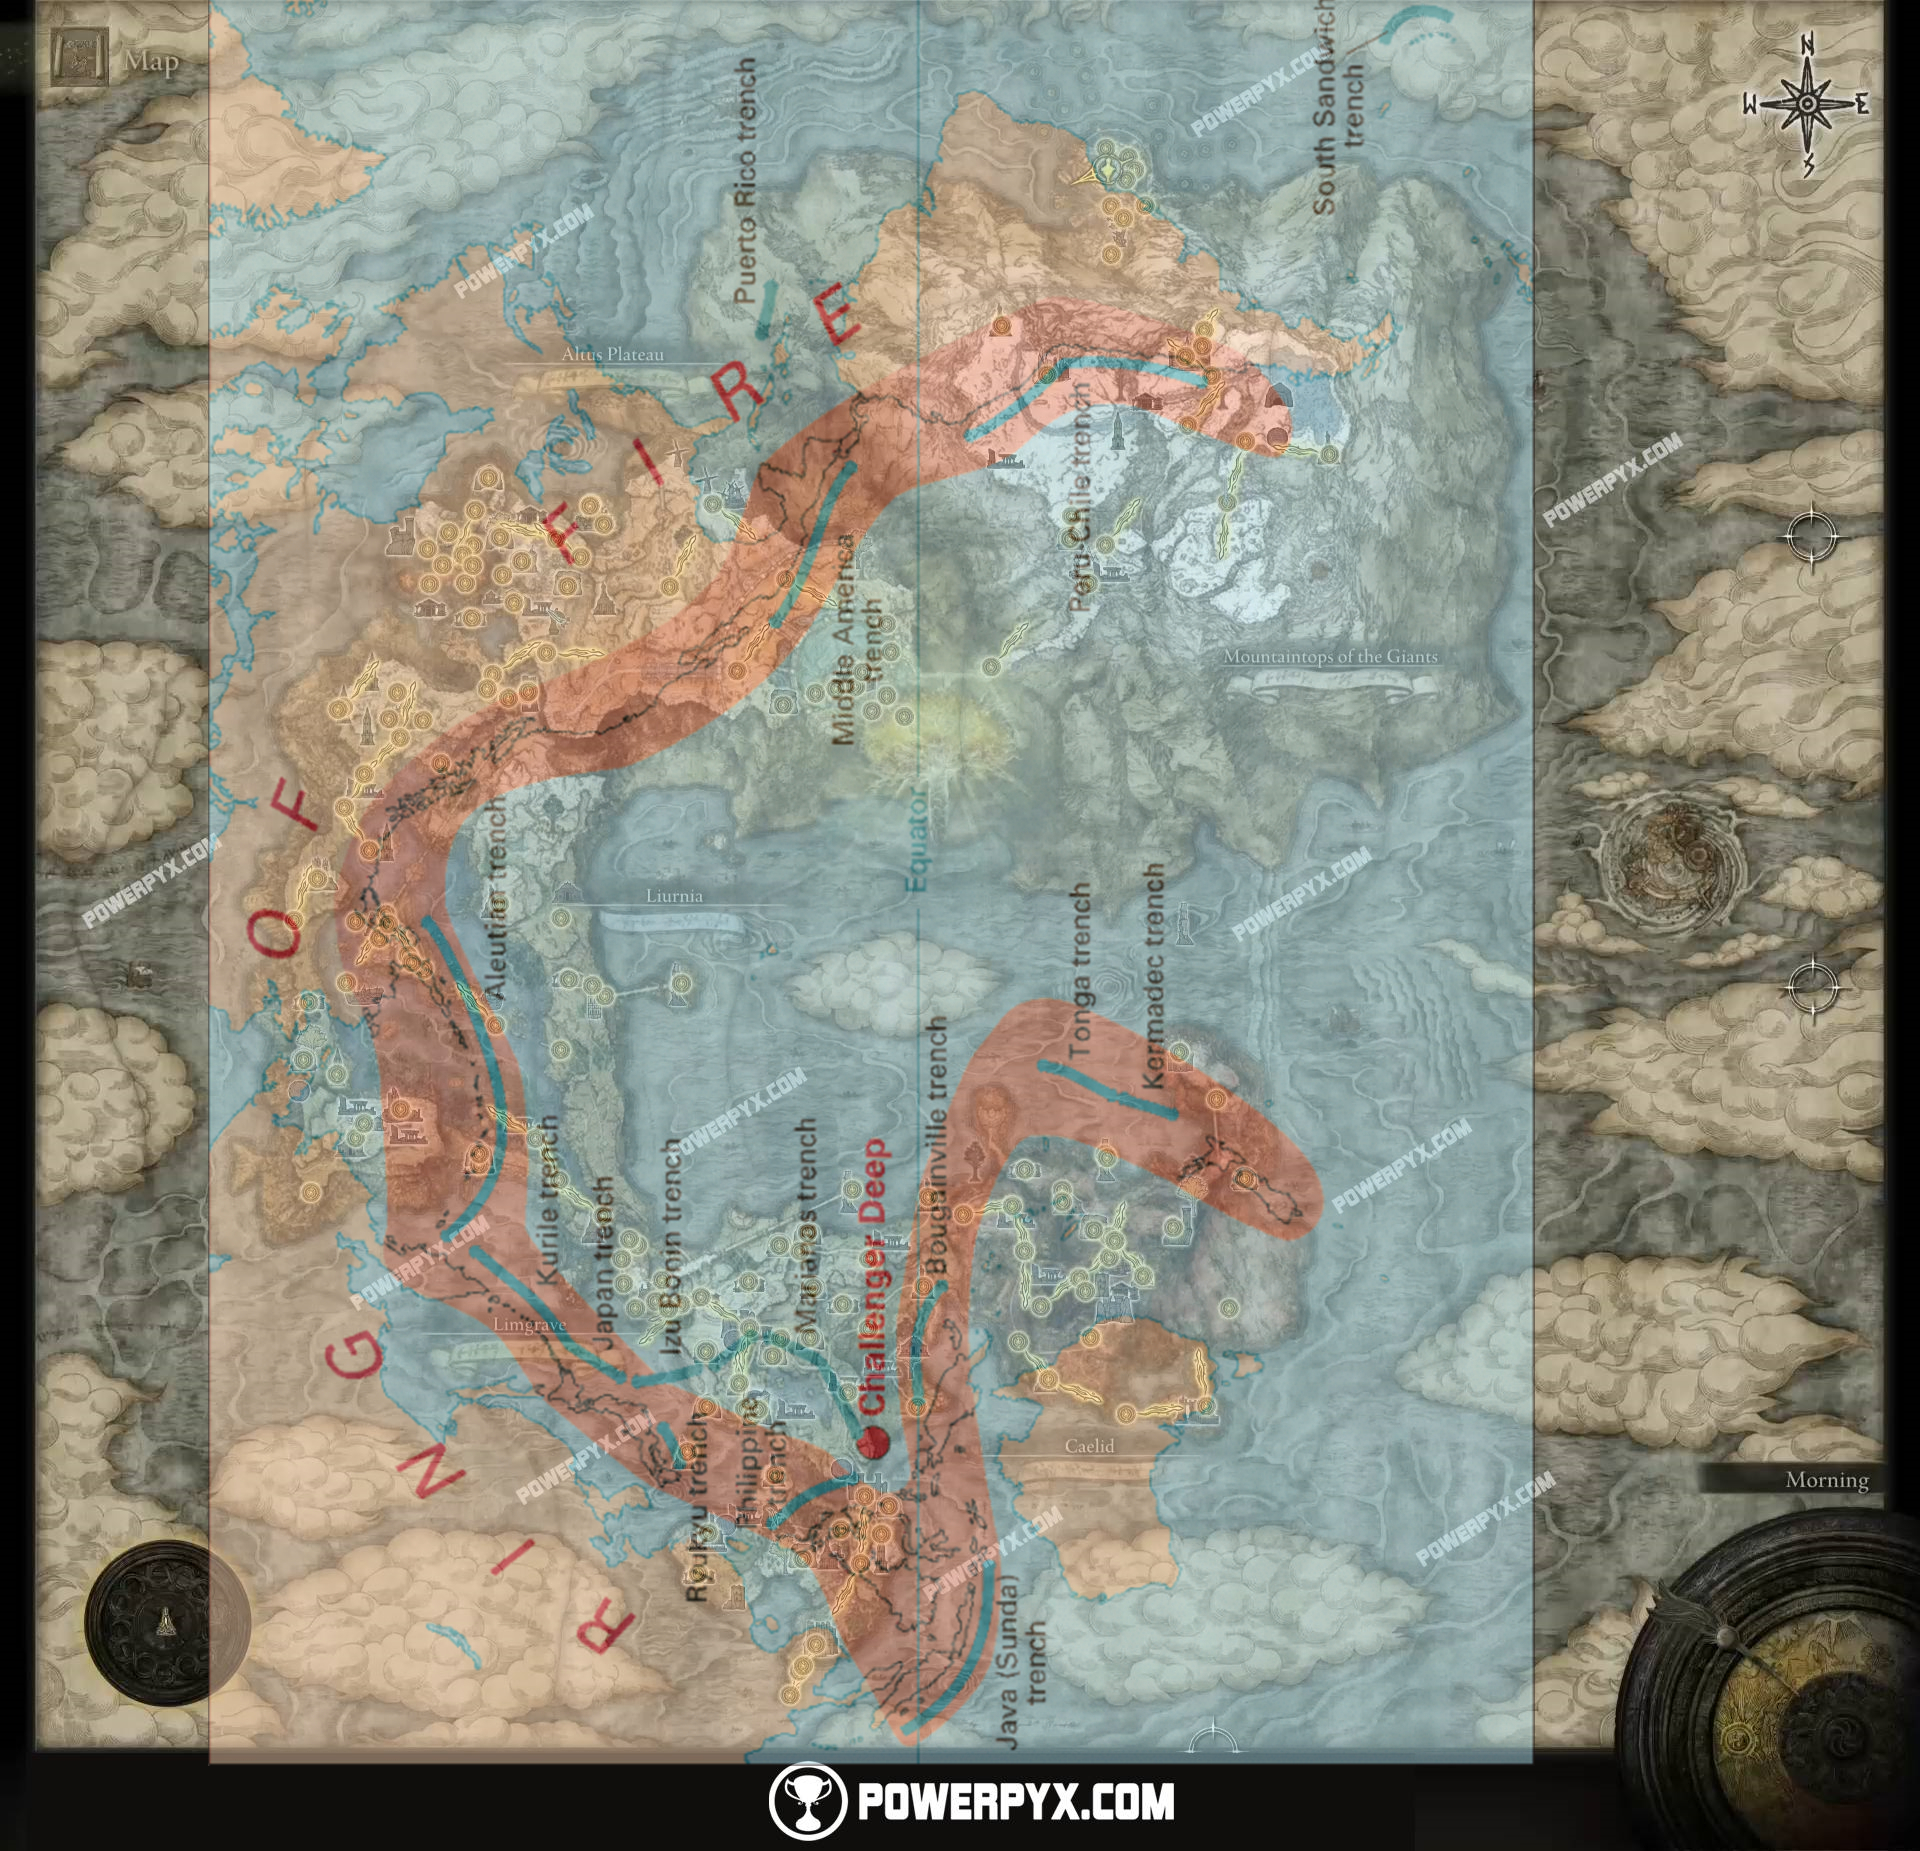 狭间地与火环带的地形对比（游戏地图来自 POWERPYX.COM ）